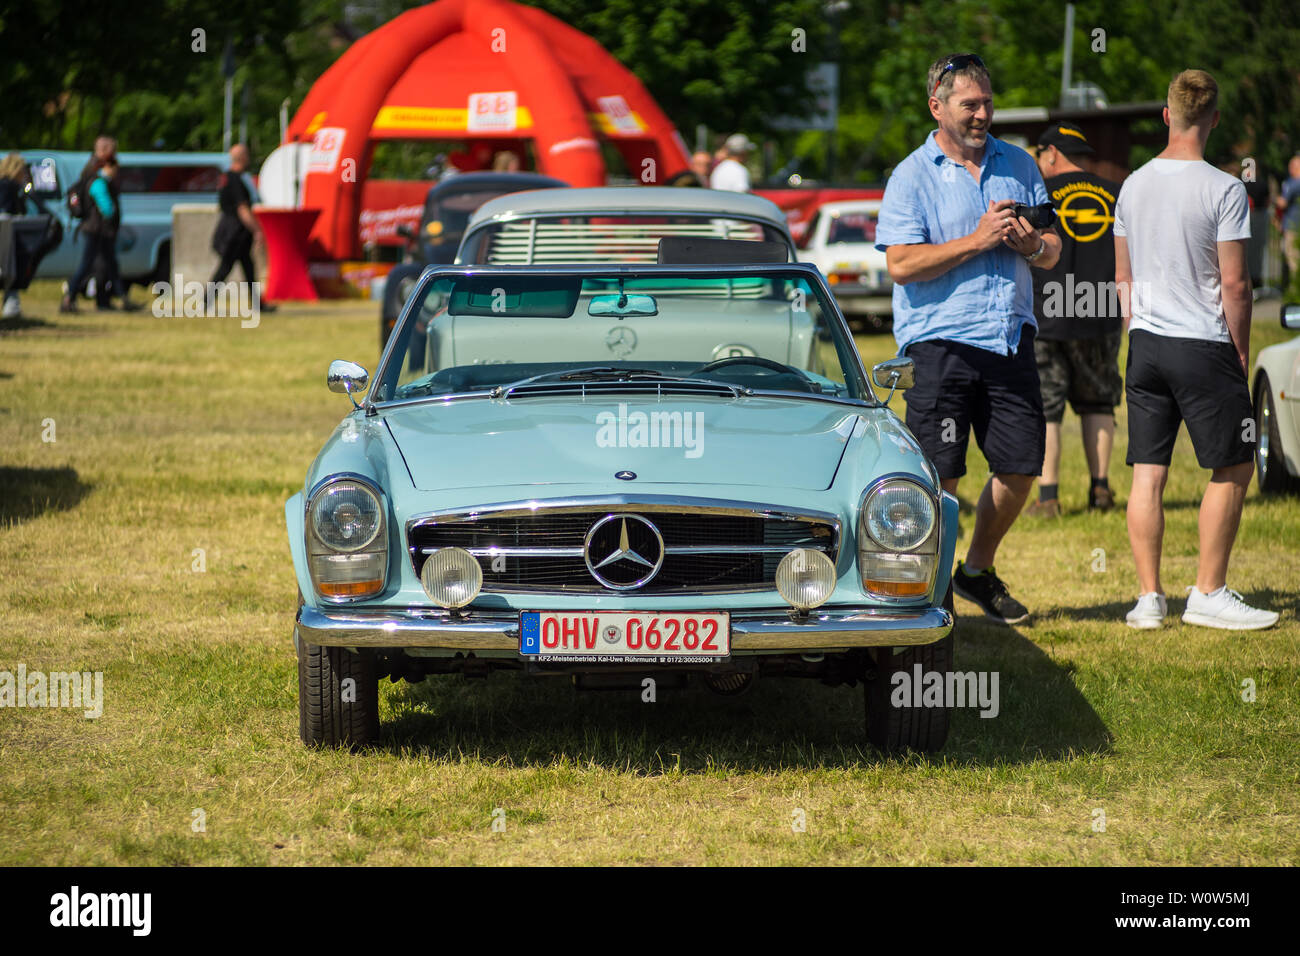 PAAREN IM GLIEN, Deutschland - 19. MAI 2018: Sportwagen Mercedes-Benz 230 SL (W113) Pagode, 1965. Oldtimer-show 2018 sterben. Stockfoto